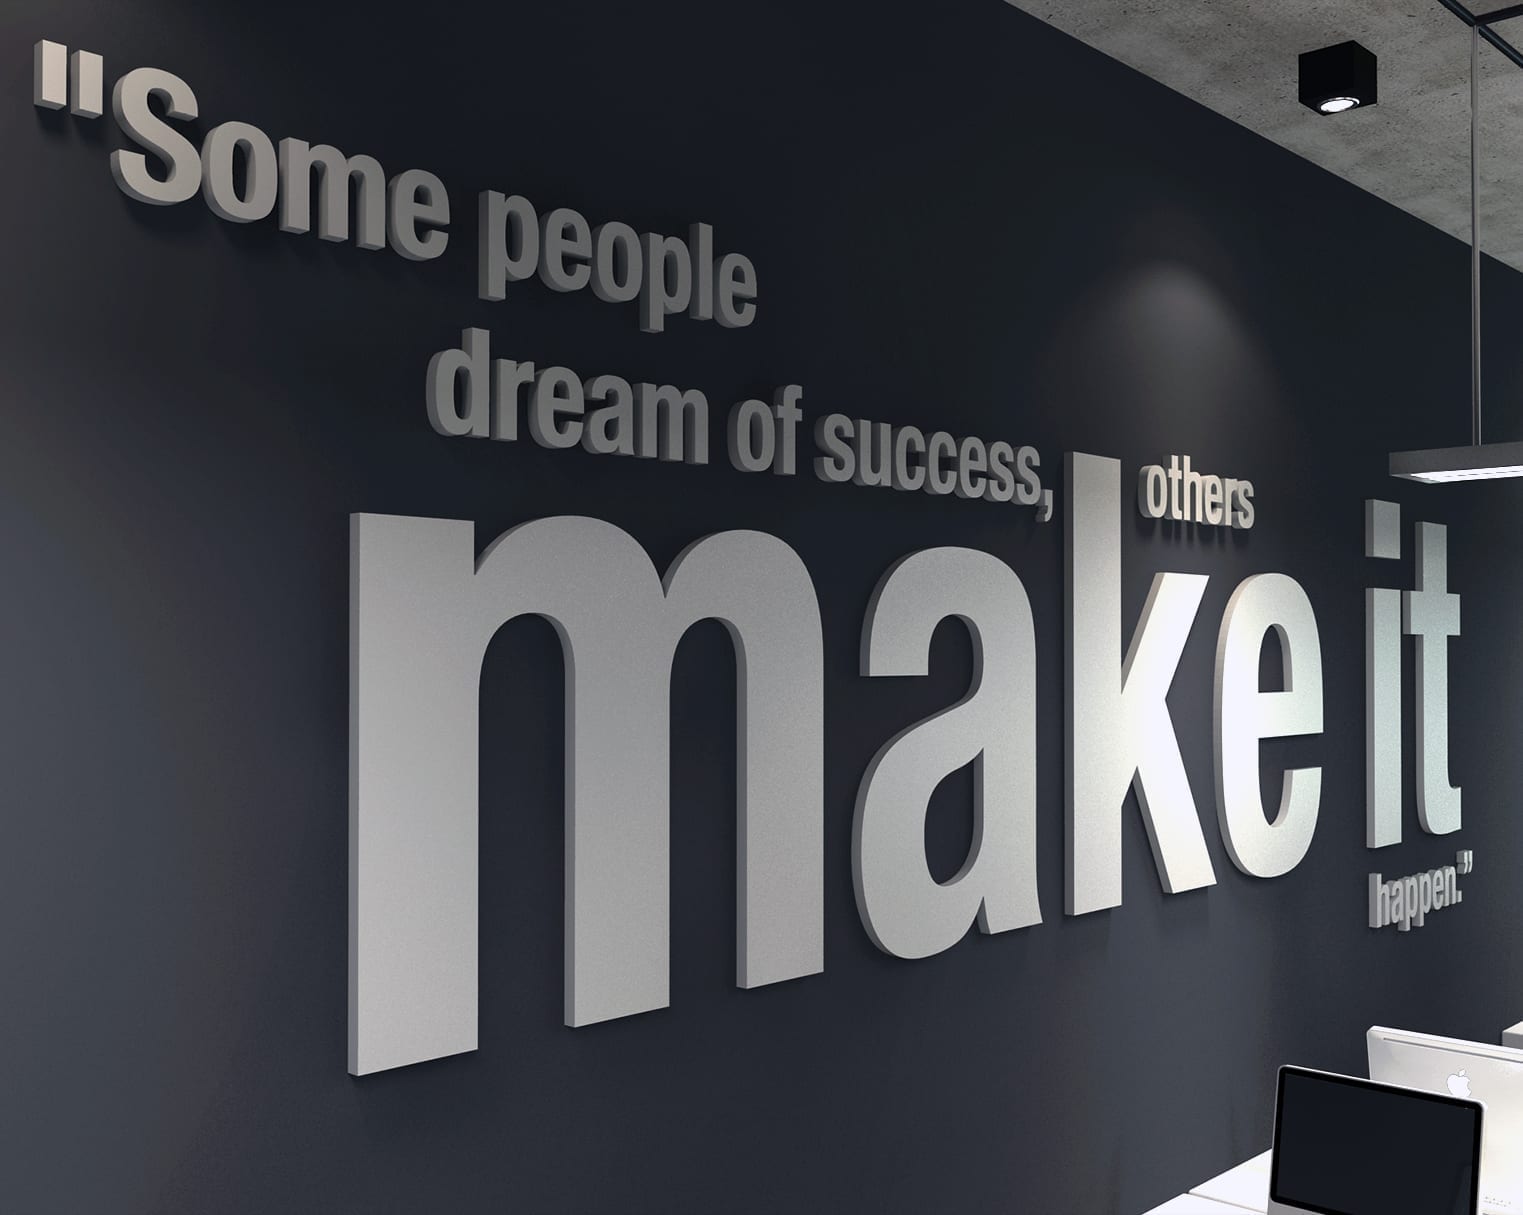 Make it Happen 3D Office Wall Art